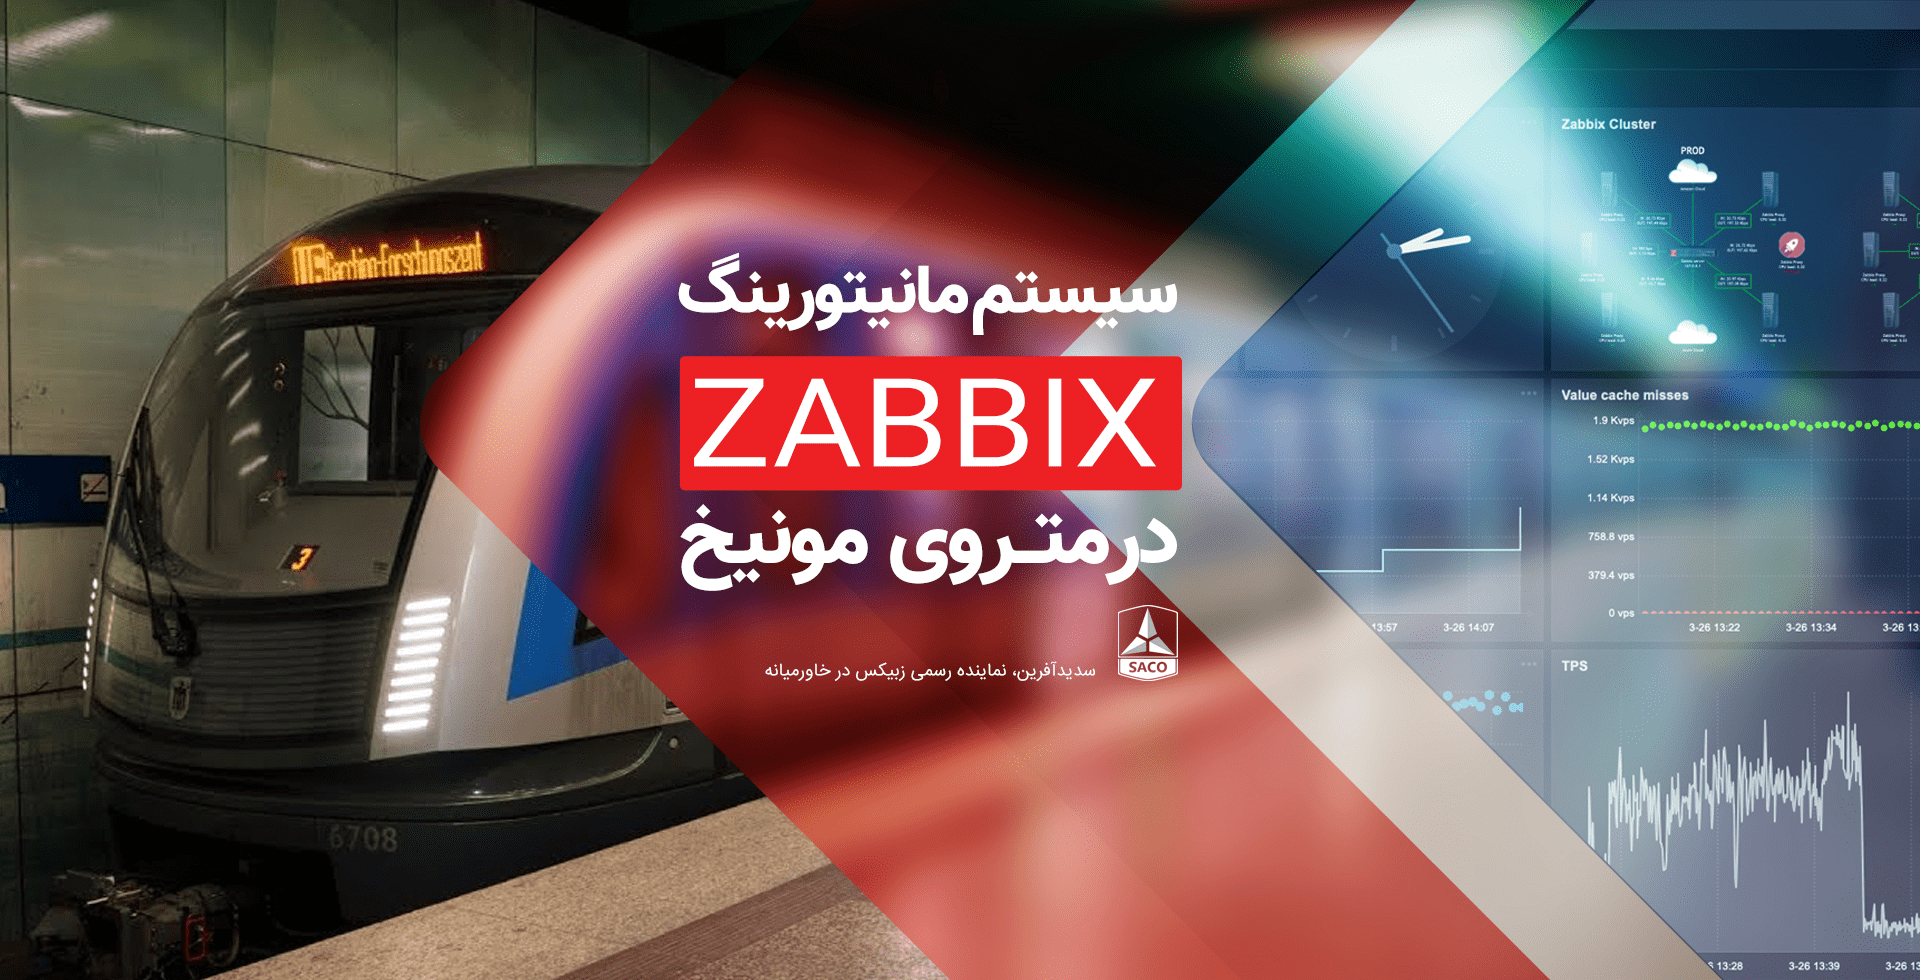 زبیکس در مترو؛ شرکت حمل و نقل مونیخ